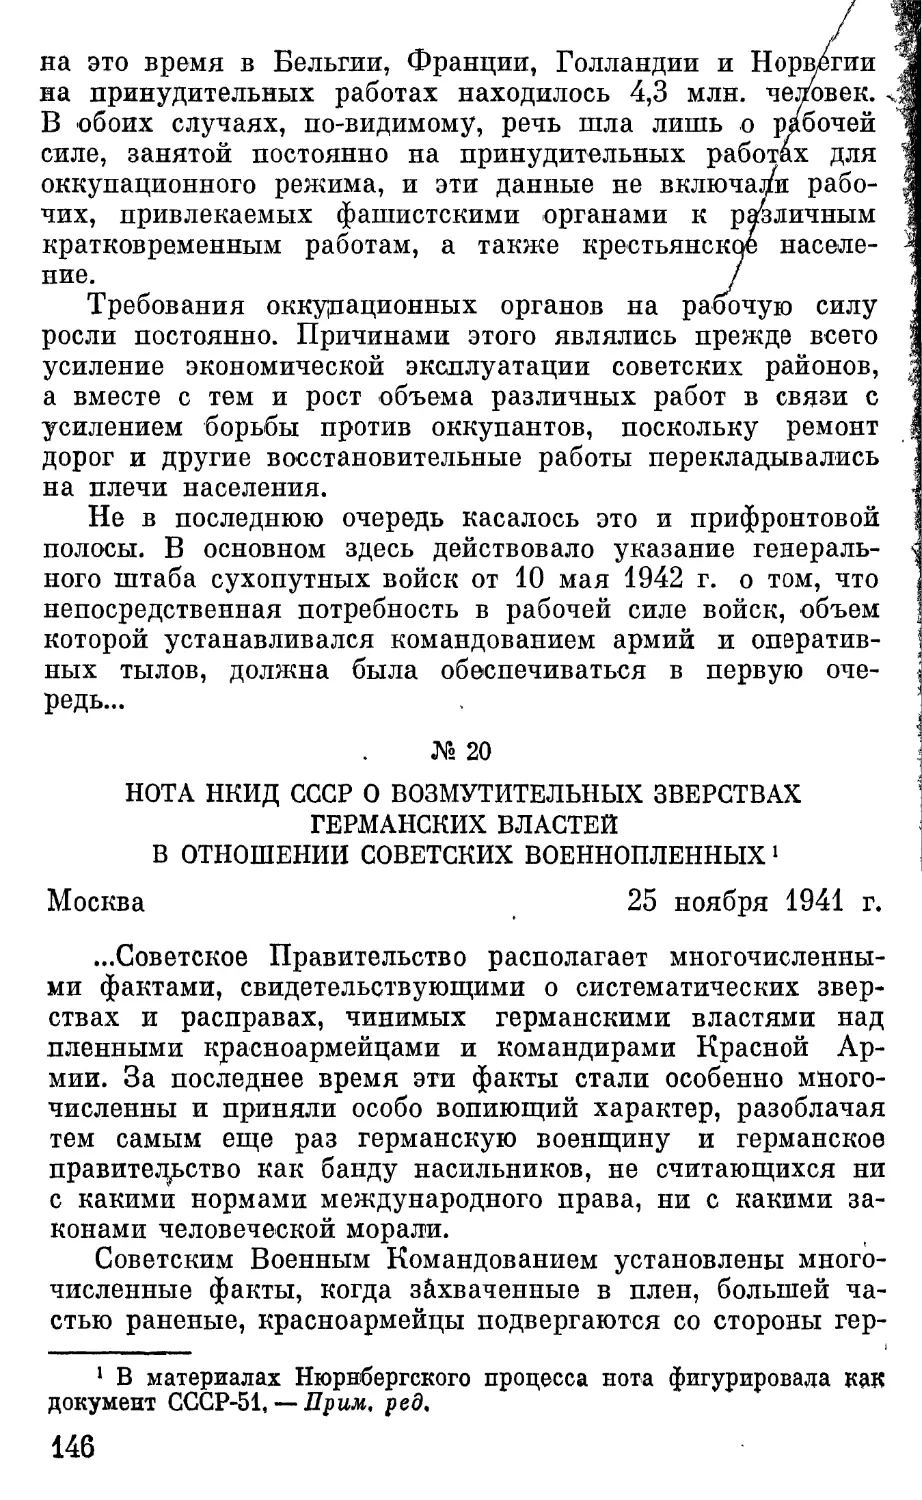 Нота НКИД СССР о возмутительных зверствах германских властей в отношении советских военнопленных.